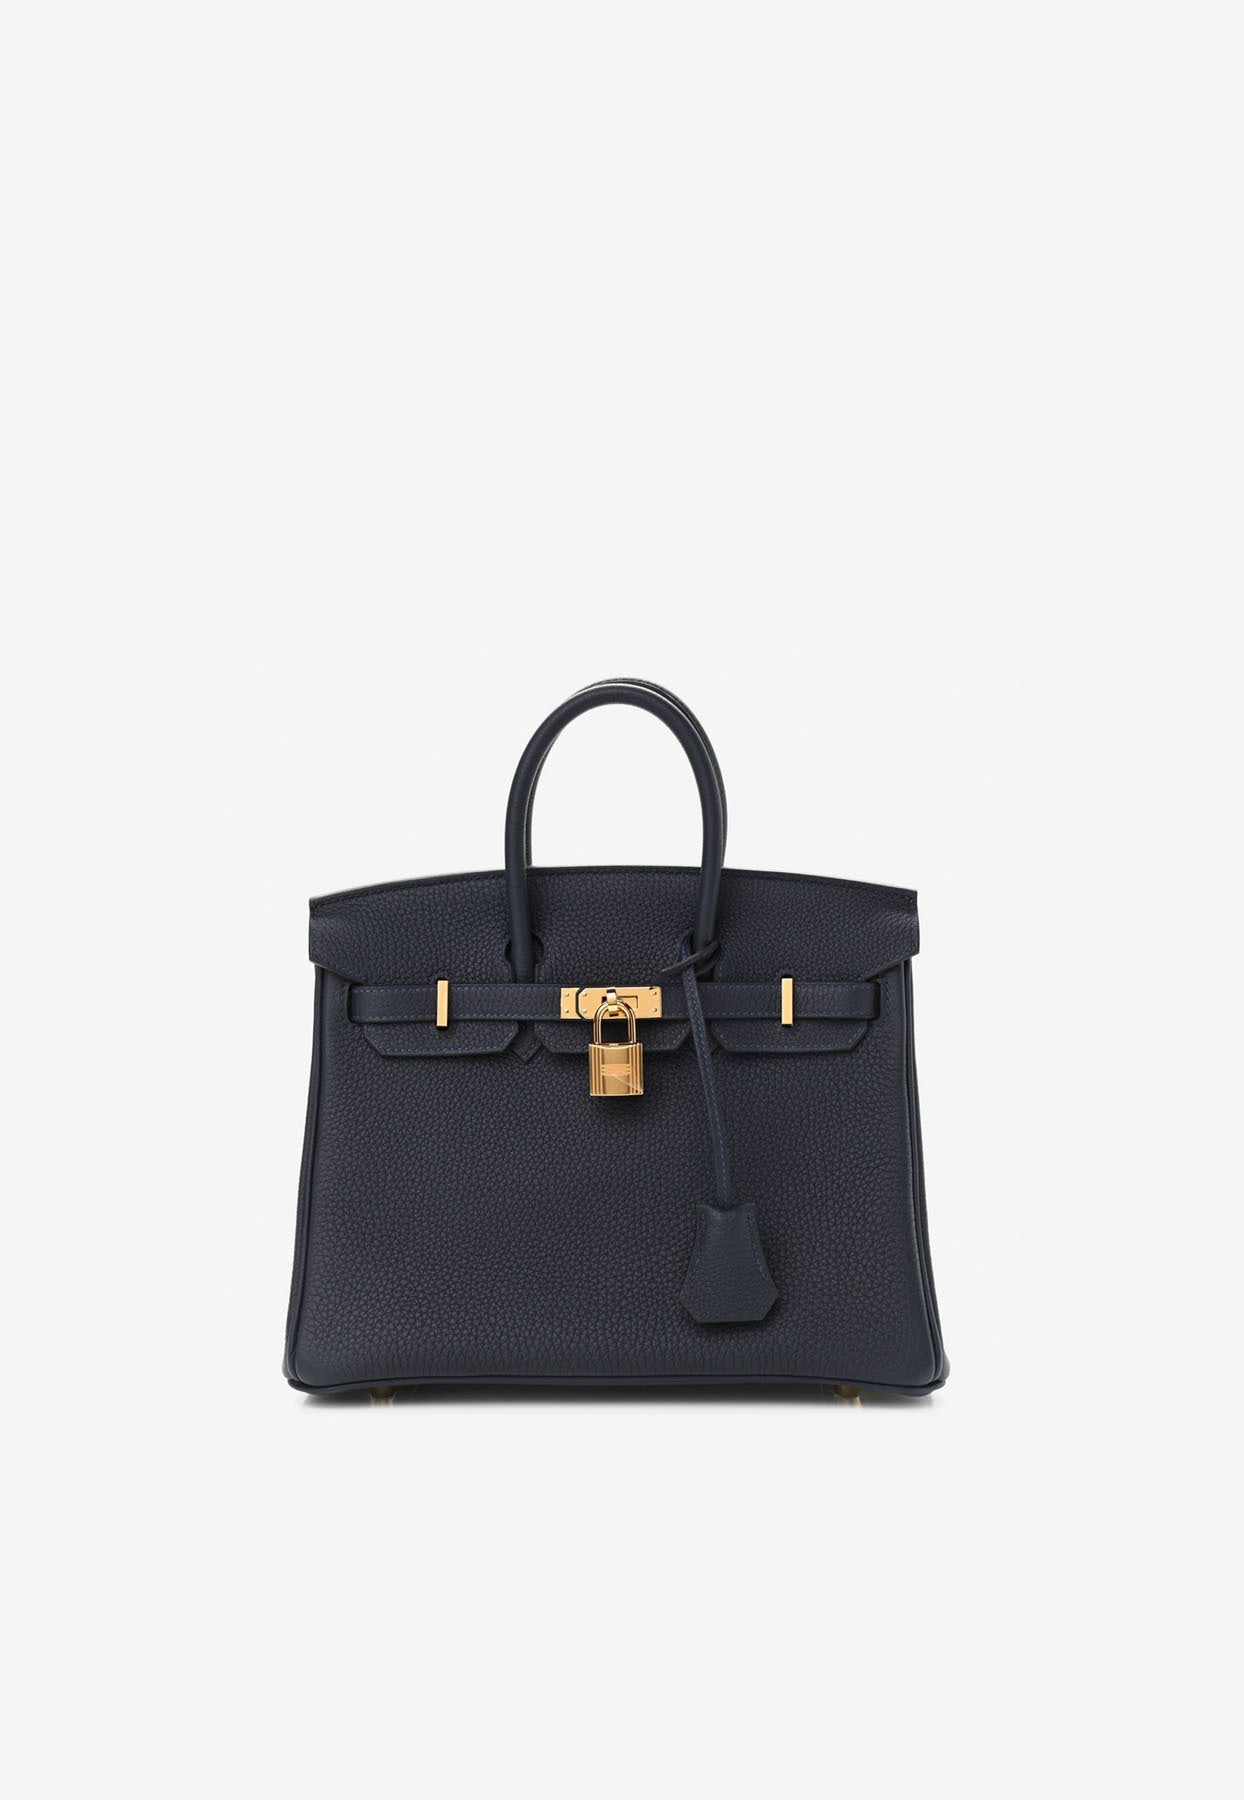 Hermes Birkin 25 Top Handle Bag